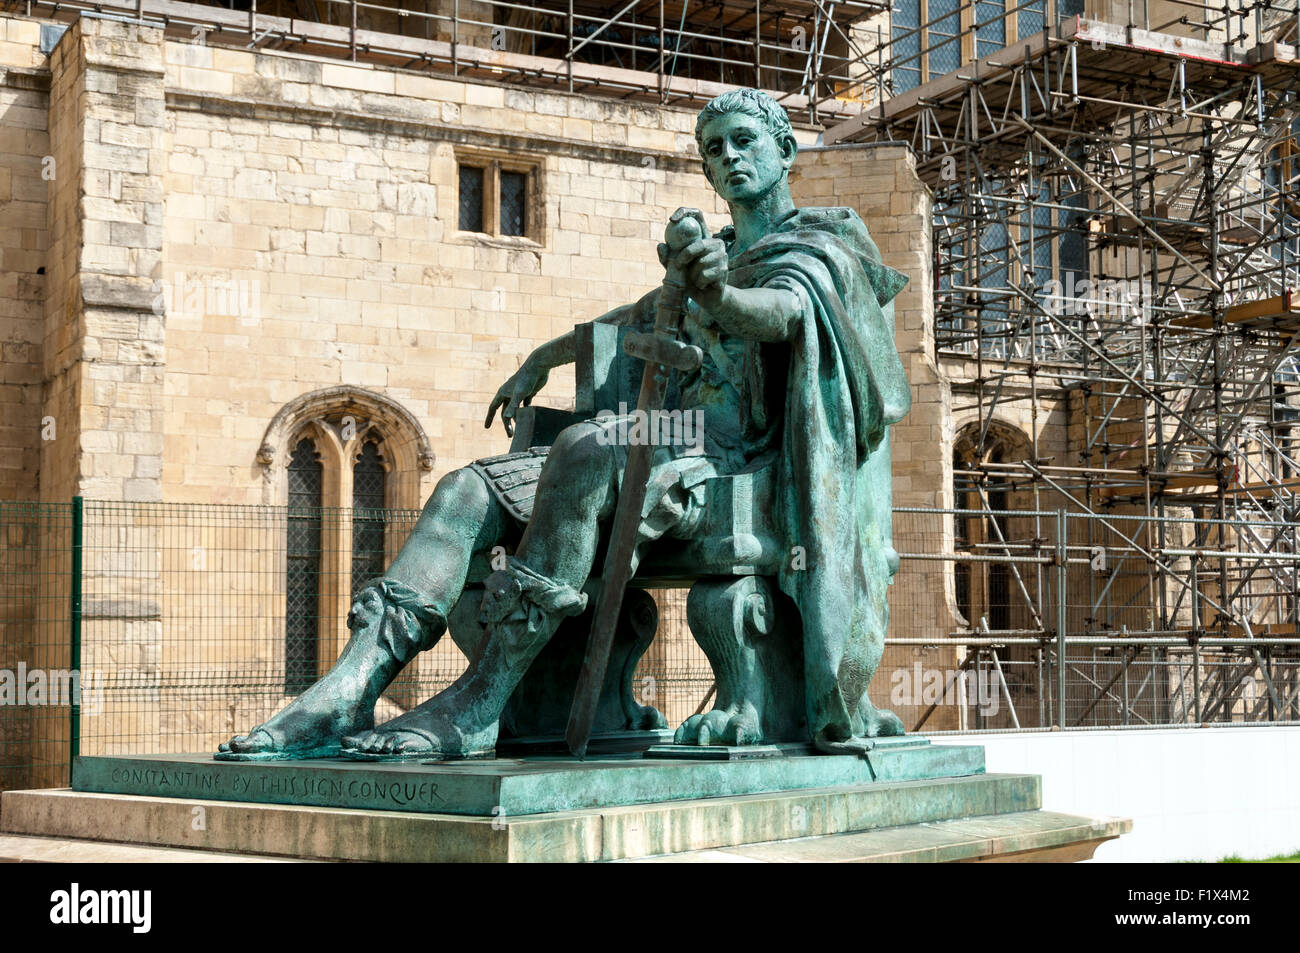 La Statua di Costantino il Grande da Philip Jackson (1998), Minster cantiere, la città di York, nello Yorkshire, Inghilterra, Regno Unito Foto Stock